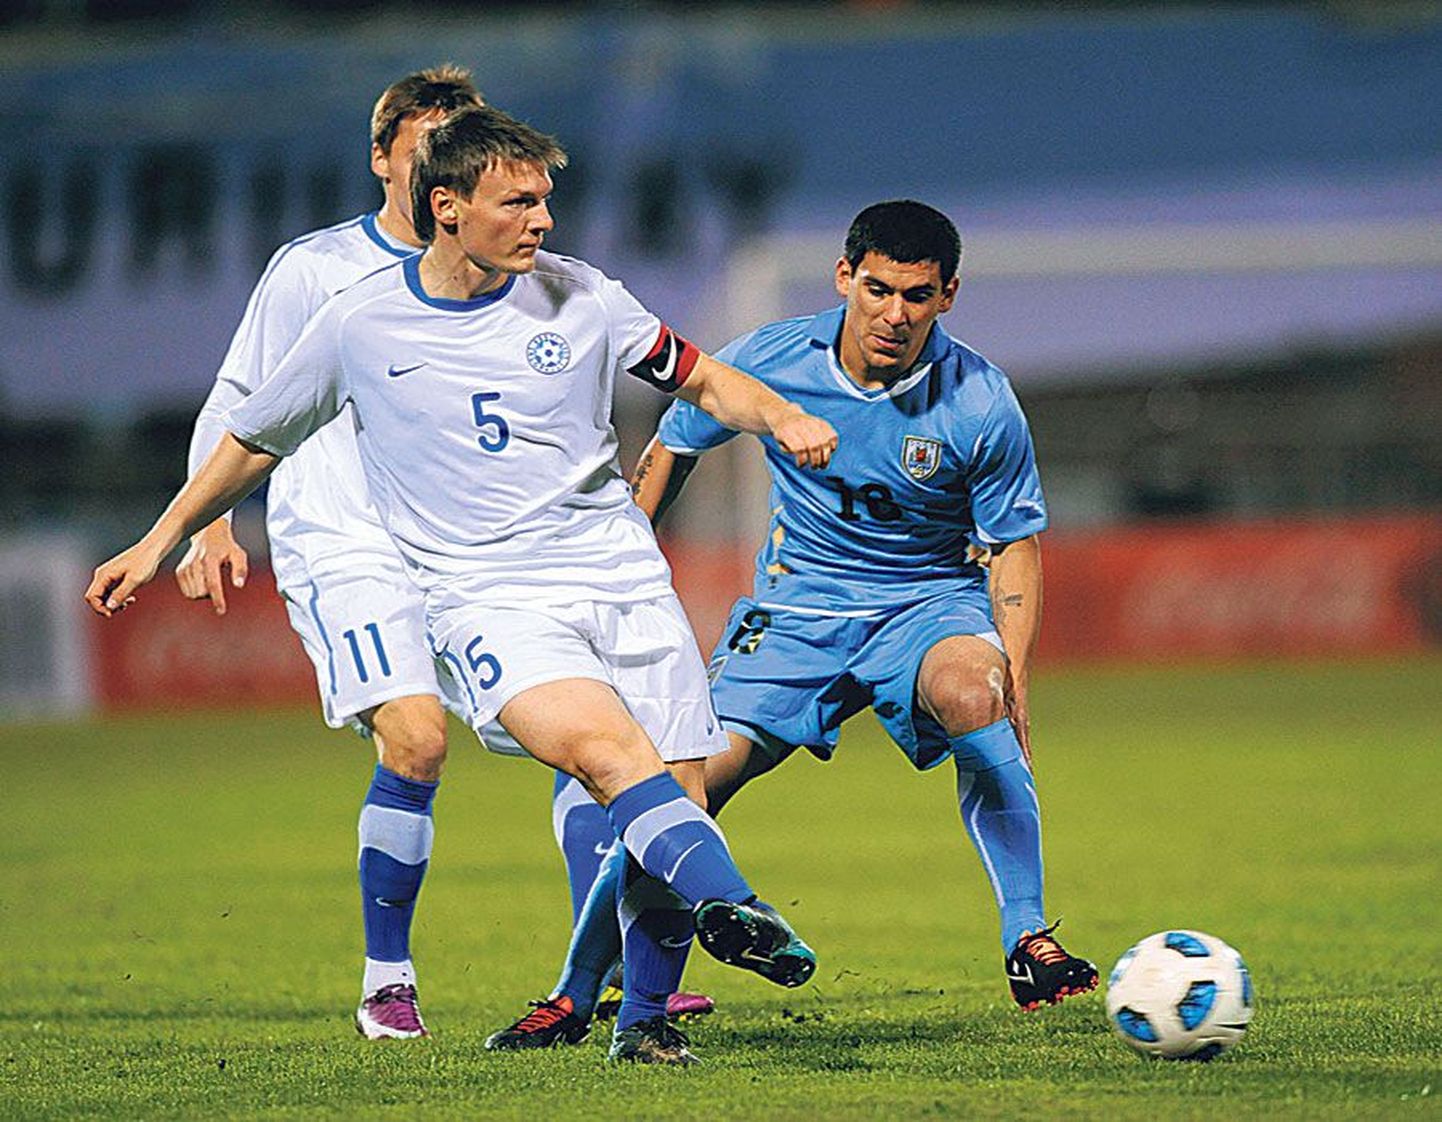 Игрок эстонской футбольной сборной Дмитрий Круглов надеется продолжить карьеру в другом российском клубе, выступающем в премьер-лиге чемпионата России.